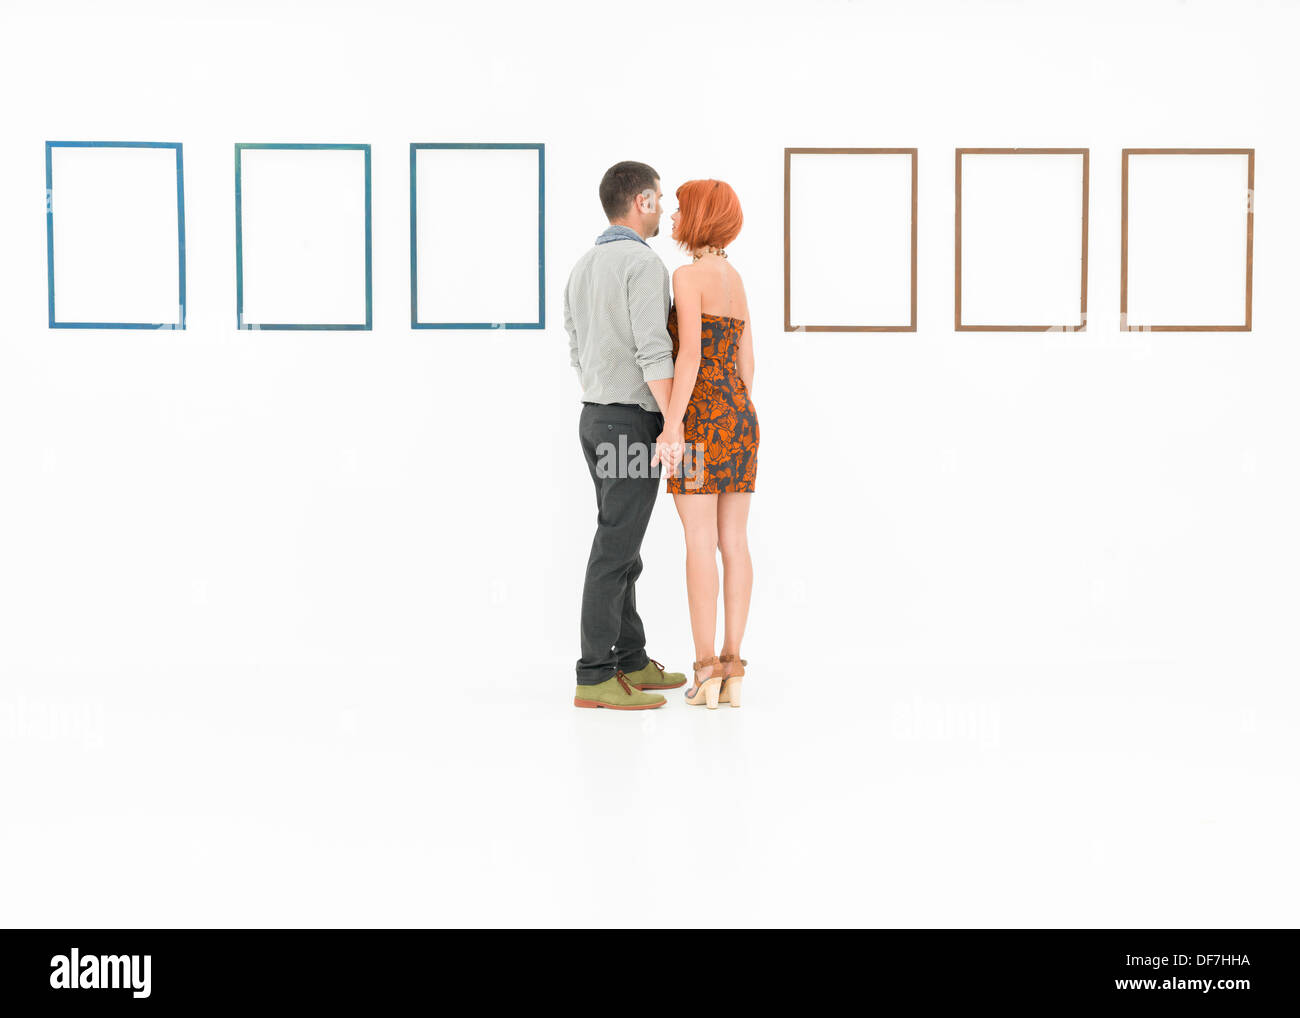 L'homme et la femme se tenant la main en face de cadres vides affichées sur des murs blancs Banque D'Images